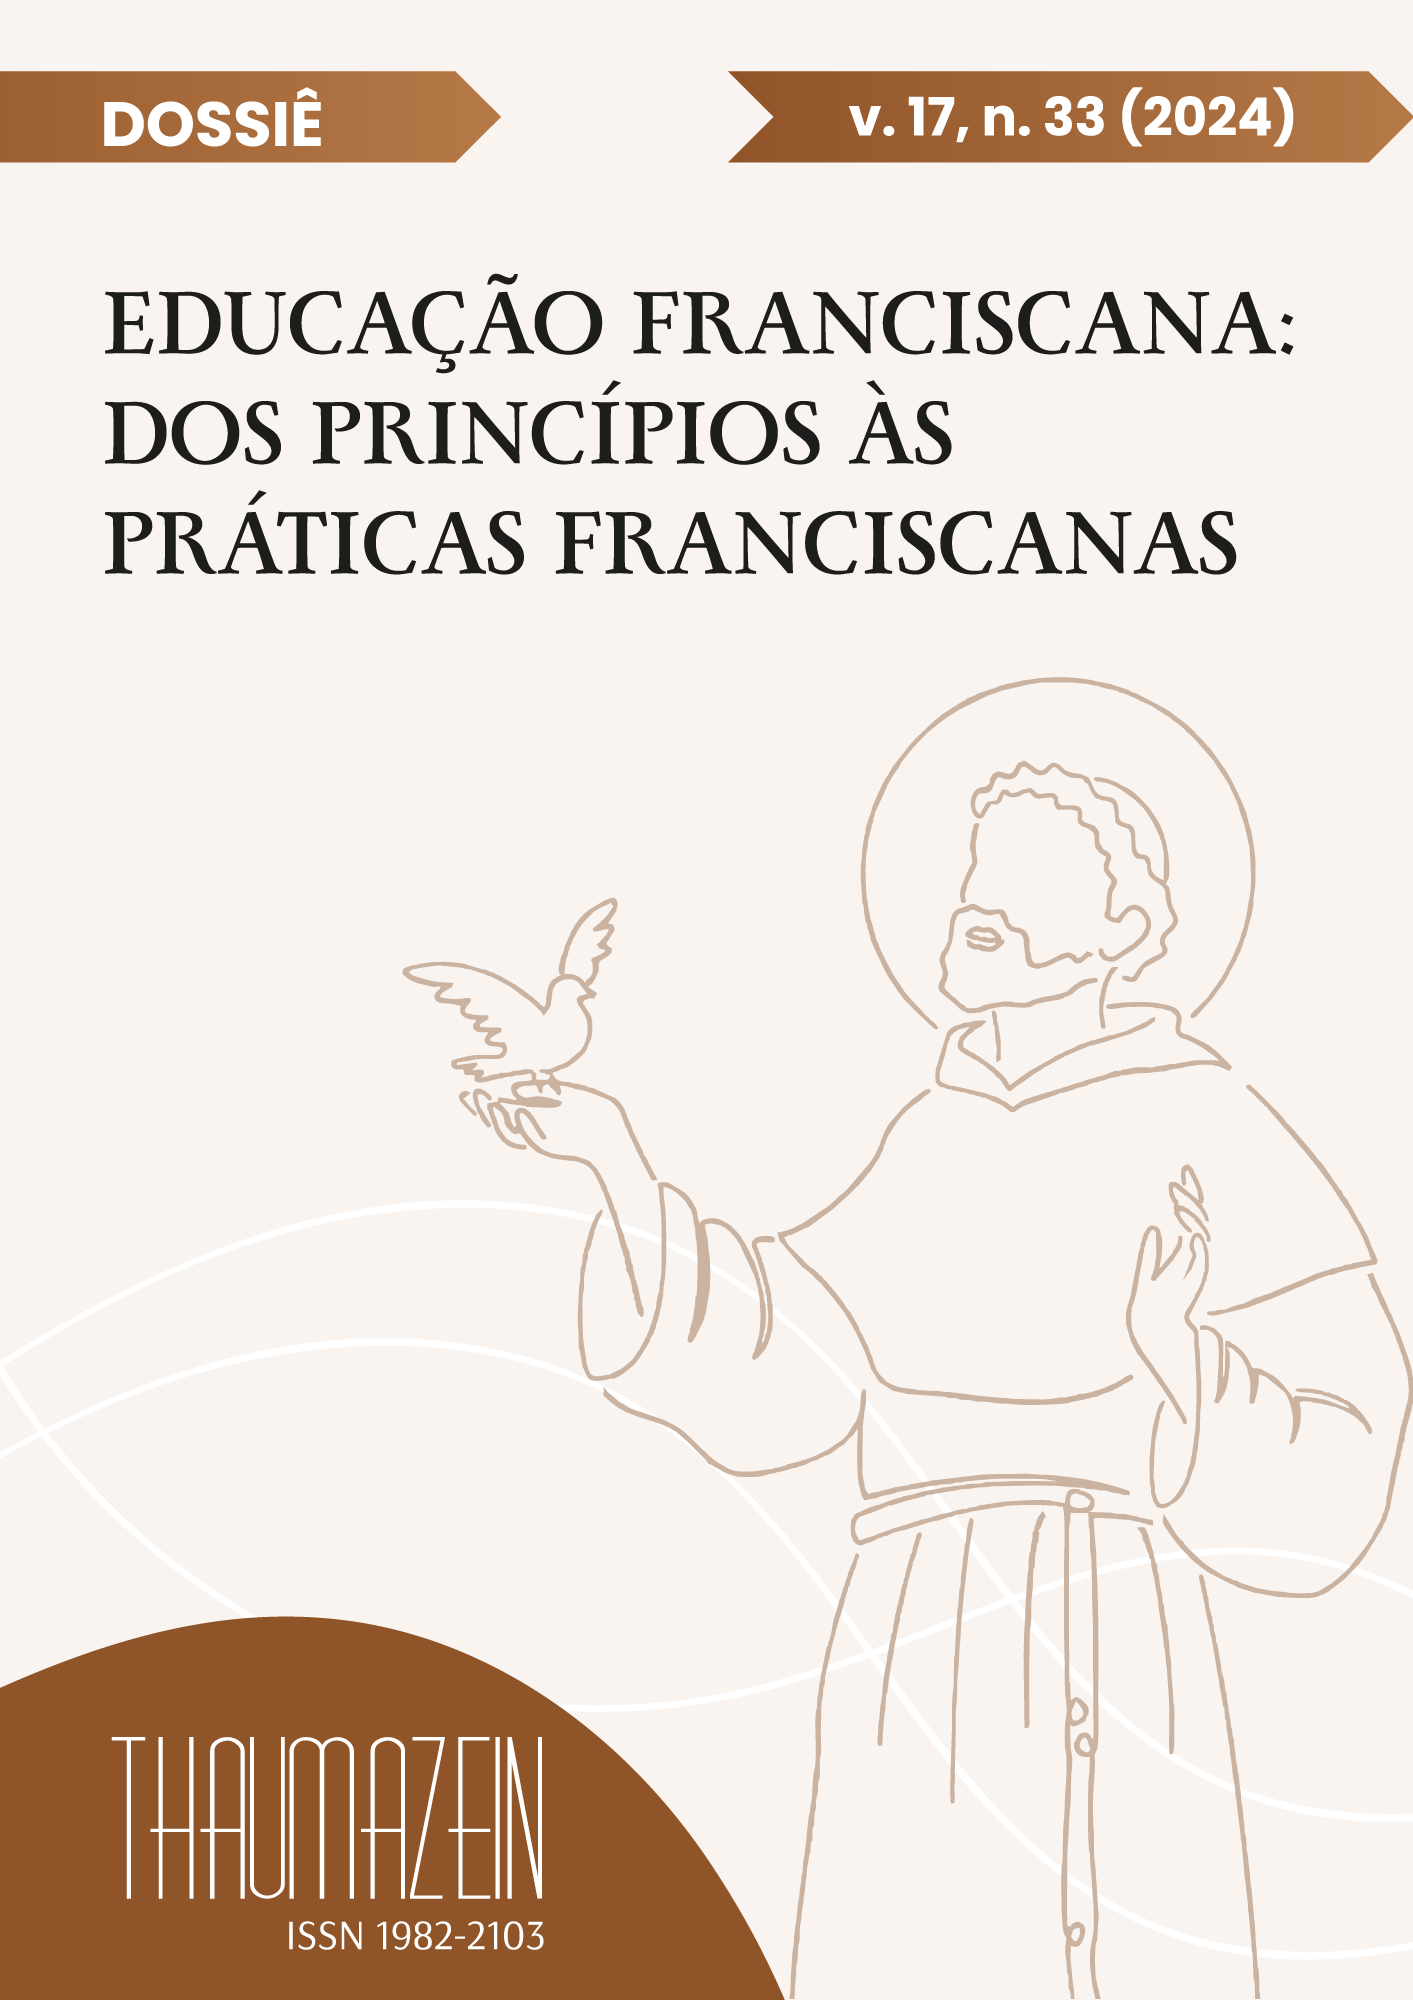 					Visualizar v. 17 n. 33 (2024): Dossiê: Educação Franciscana: dos princípios às práticas
				